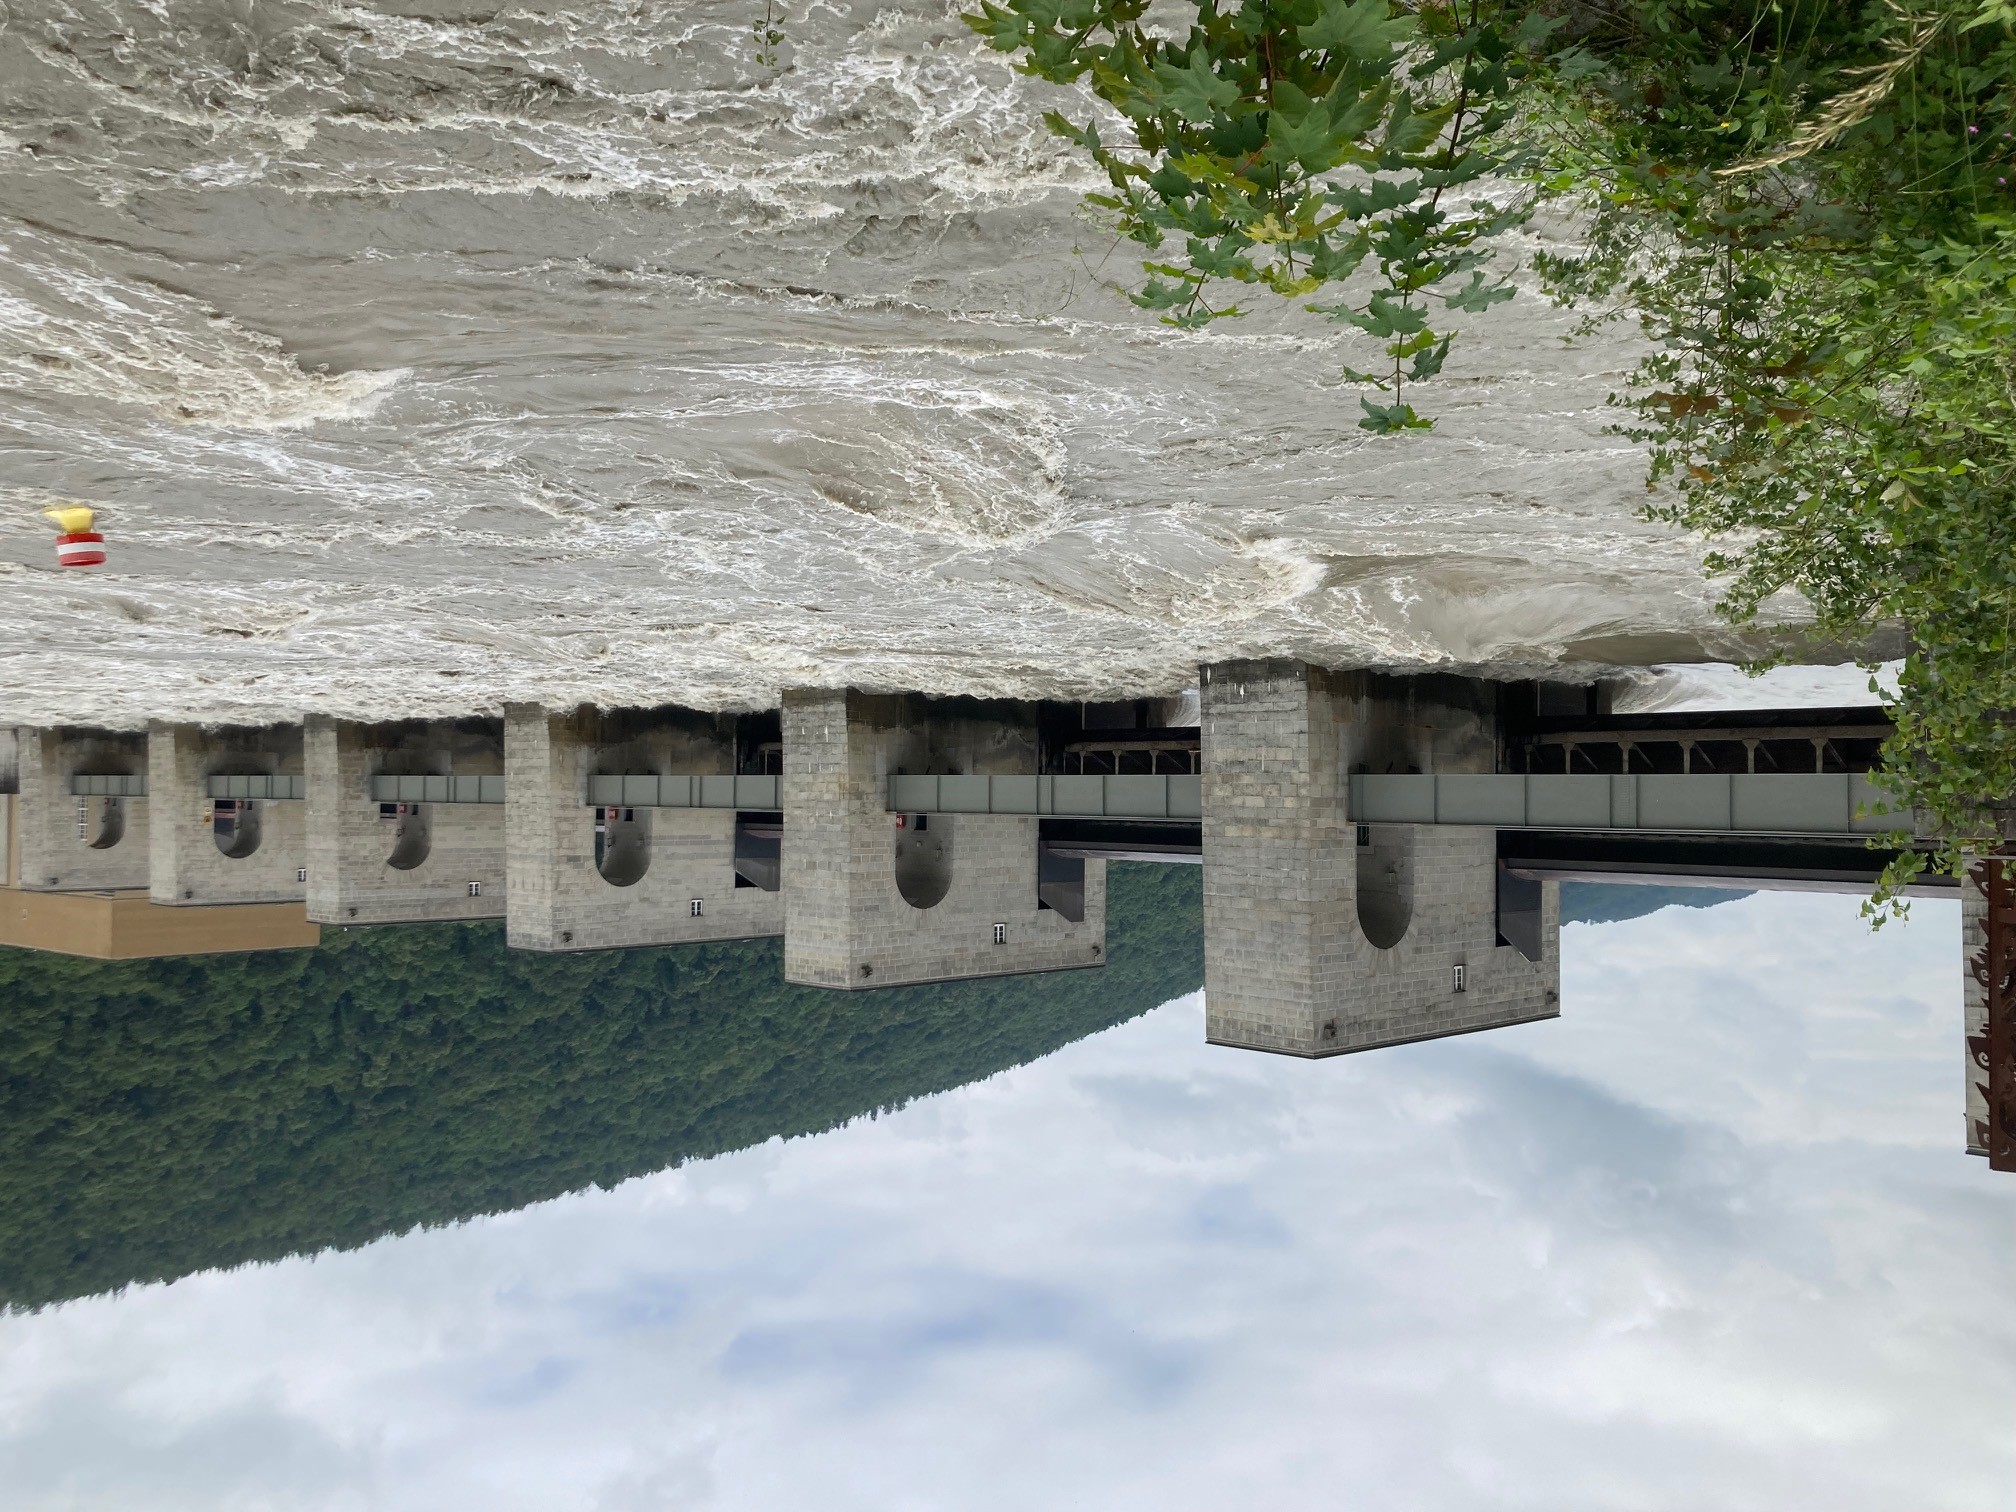 Hochwasserregulierung am Donau-Kraftwerk Jochenstein: Das Wasser kann frei durchfließen und entlastet dadurch die Pegelstände am Oberlauf